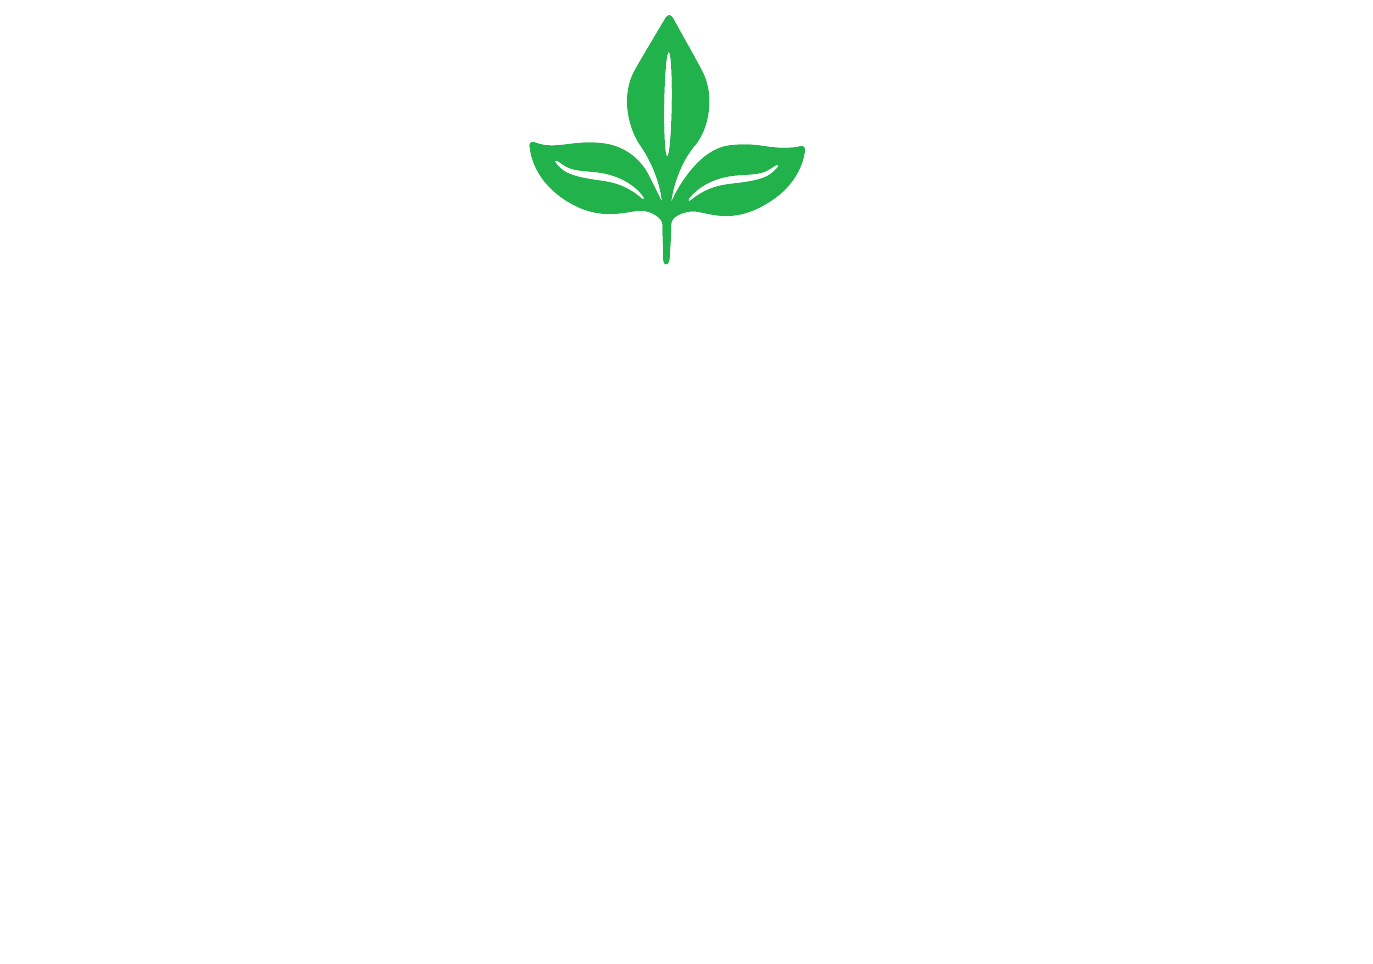 Jumex graphic